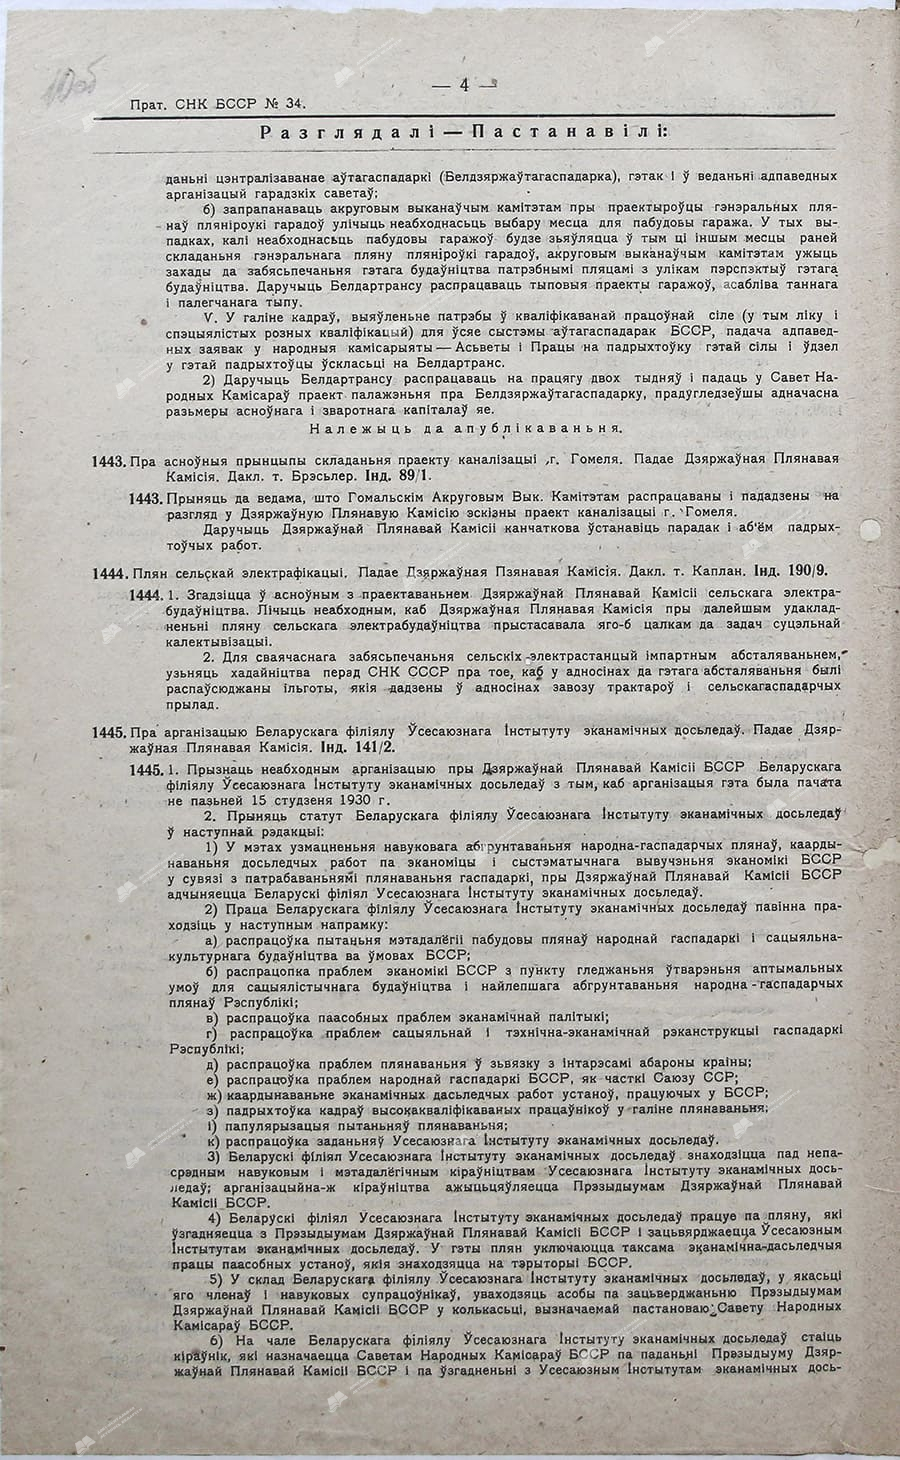 Протокол №34 заседания Совета Народных Комиссаров Белорусской ССР от 12 января 1930 г.-с. 1